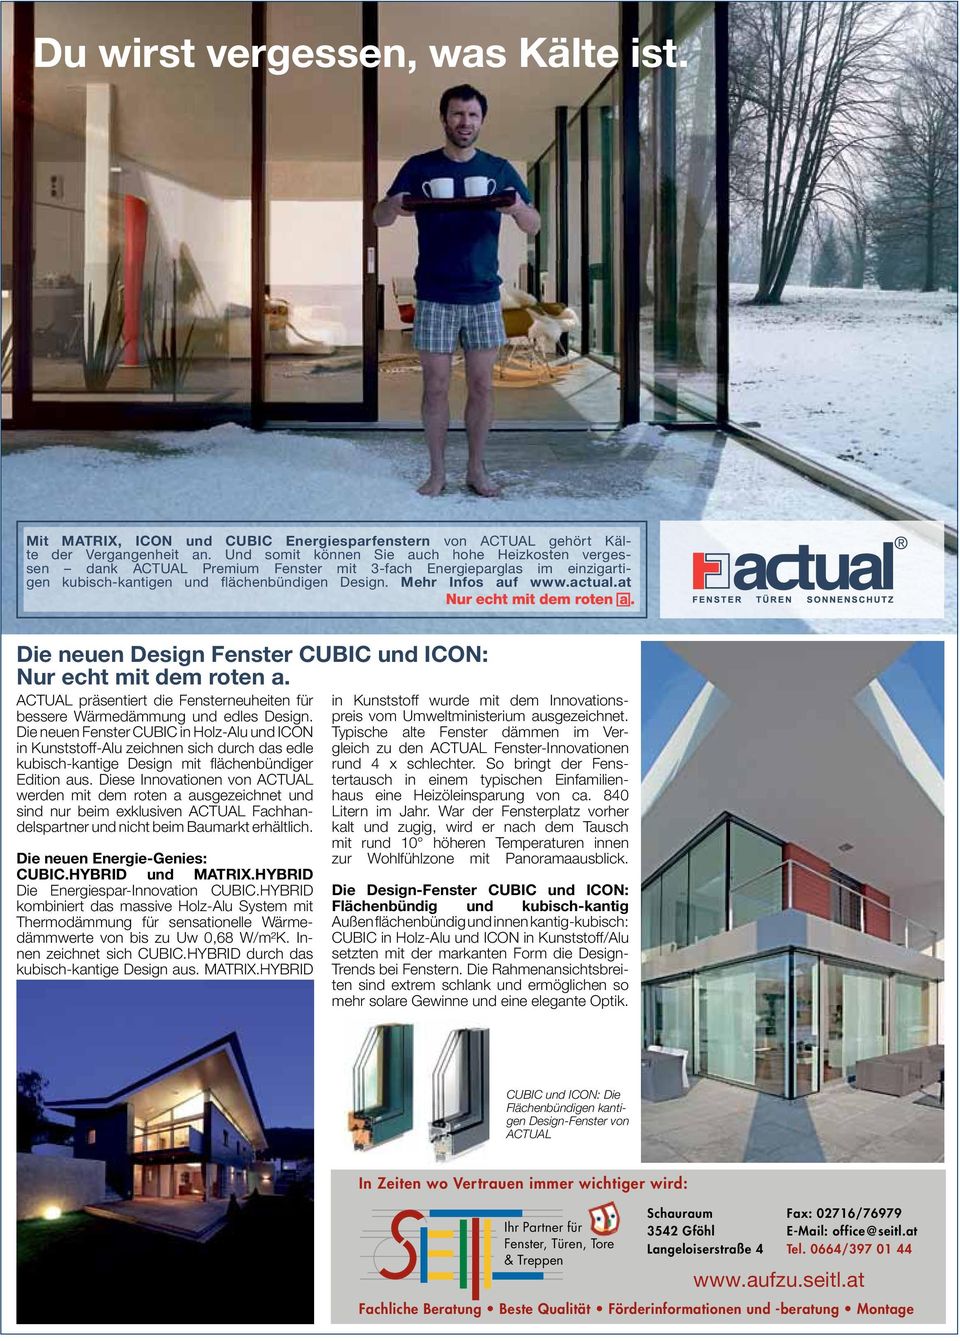 at Die neuen Design Fenster CUBIC und ICON: Nur echt mit dem roten a. ACTUAL präsentiert die Fensterneuheiten für bessere Wärmedämmung und edles Design.